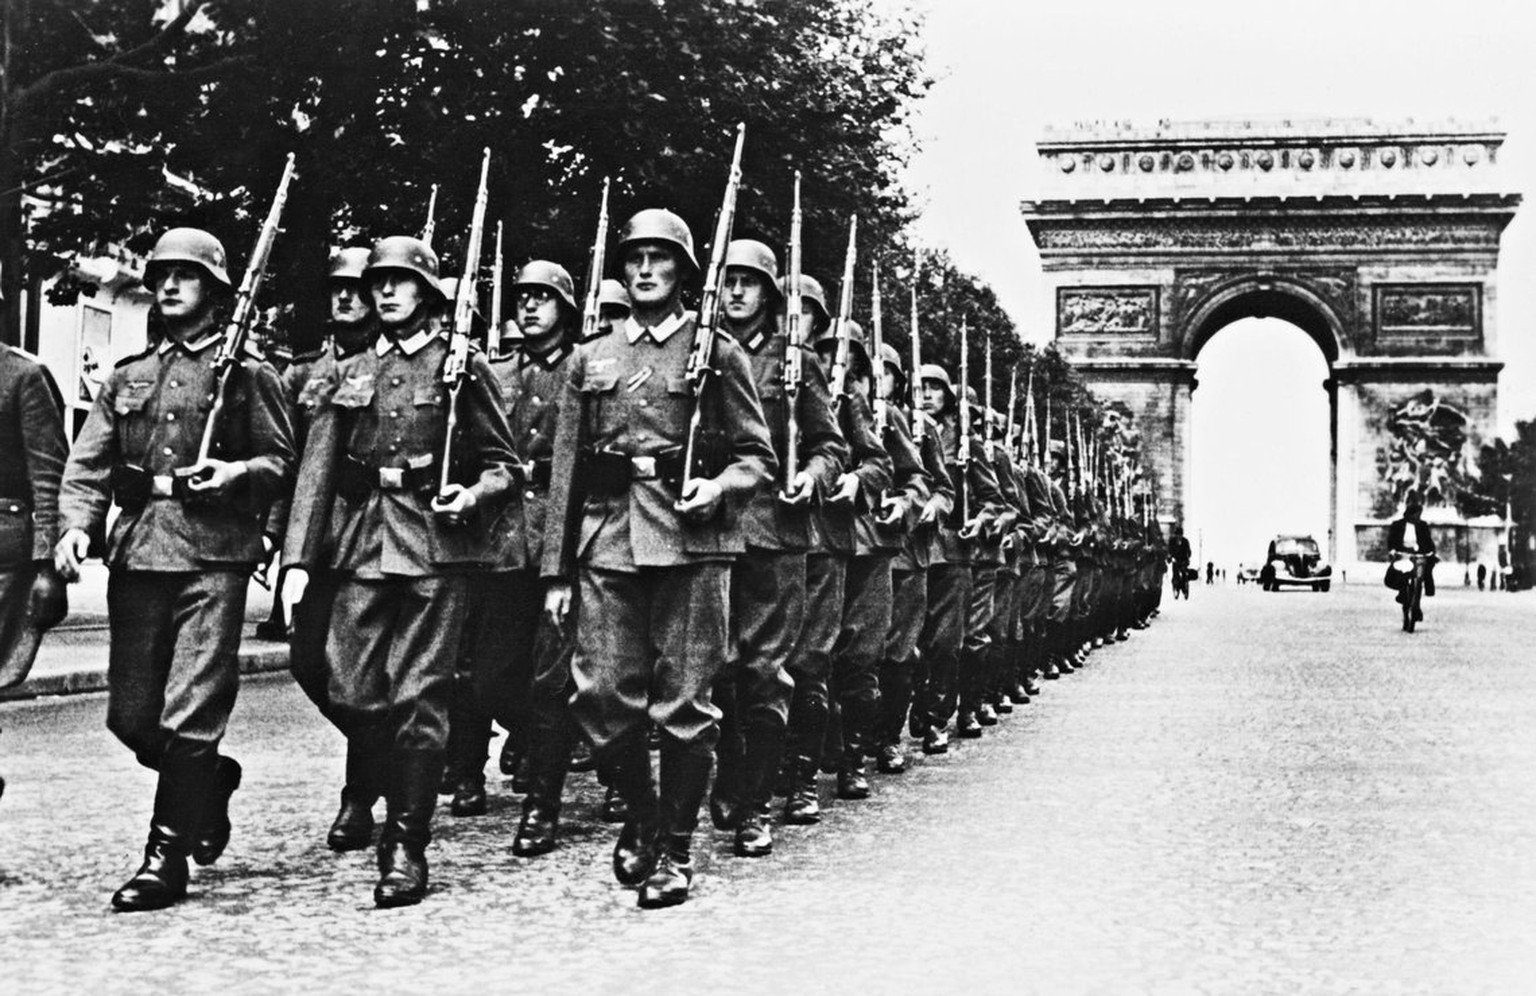 Nazis in Paris, 1940 https://www.reddit.com/r/Gondola/comments/7jgd0y/nazis_marching_through_larc_de_triomphe_1940/